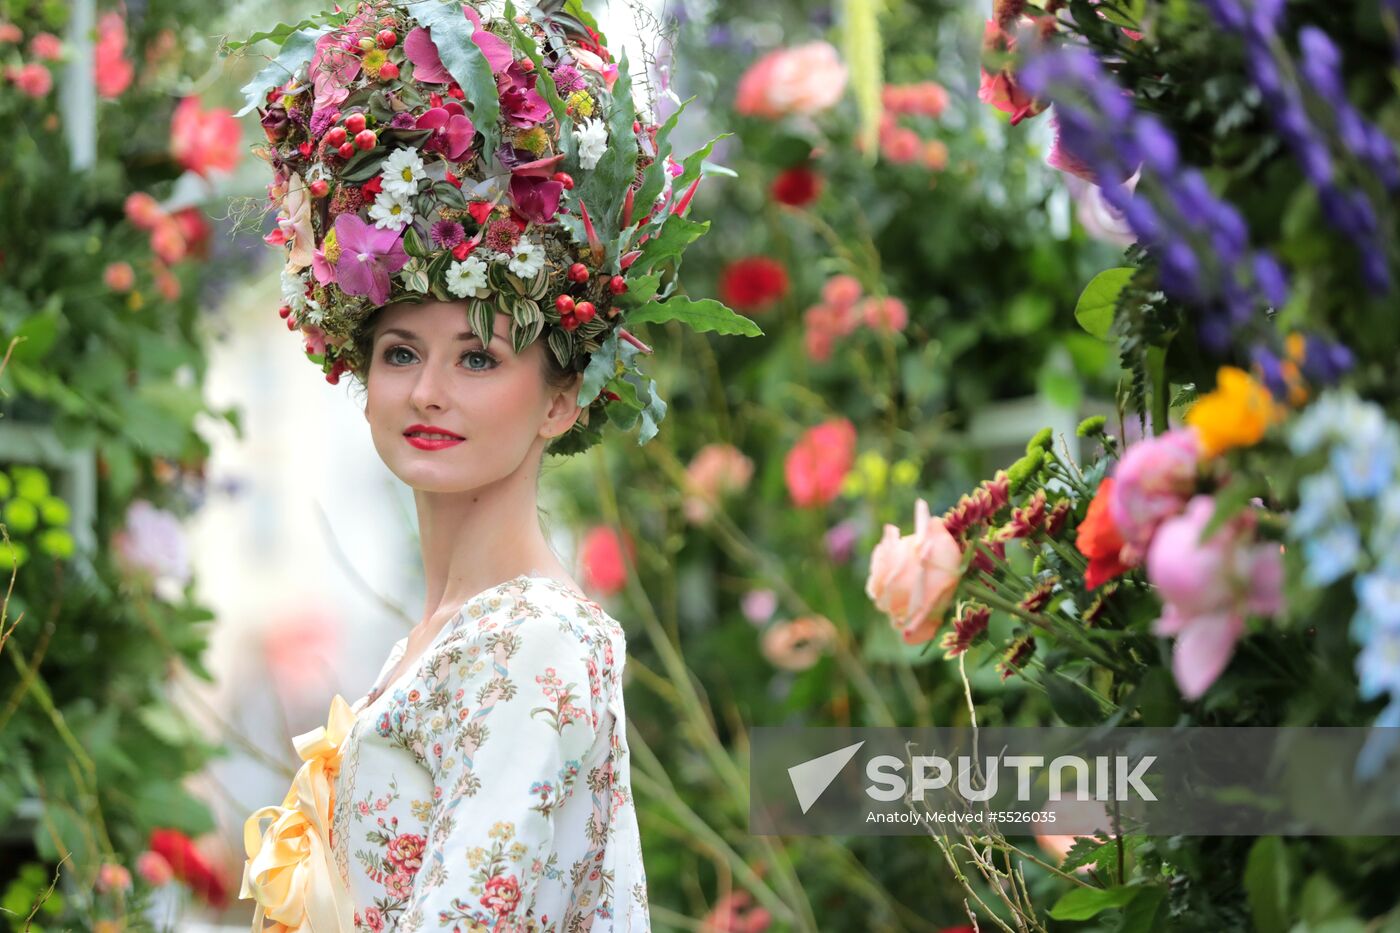 Flower festival on Nevsky Avenue in St.Petersburg